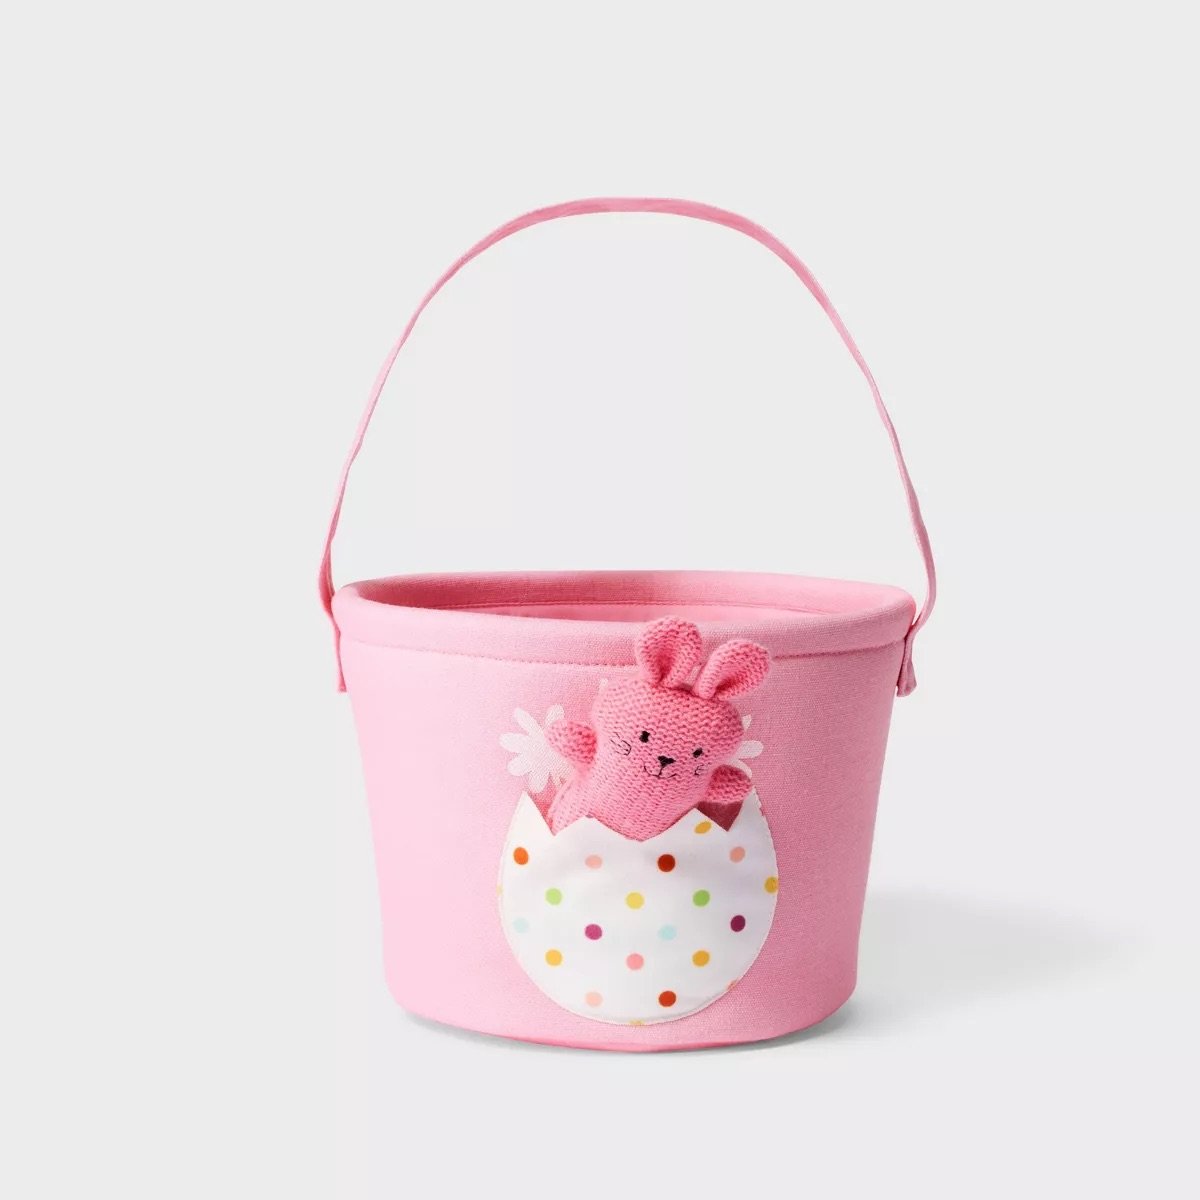 Character in Pocket Easter Basket Pink Bunny Spritz.jpeg